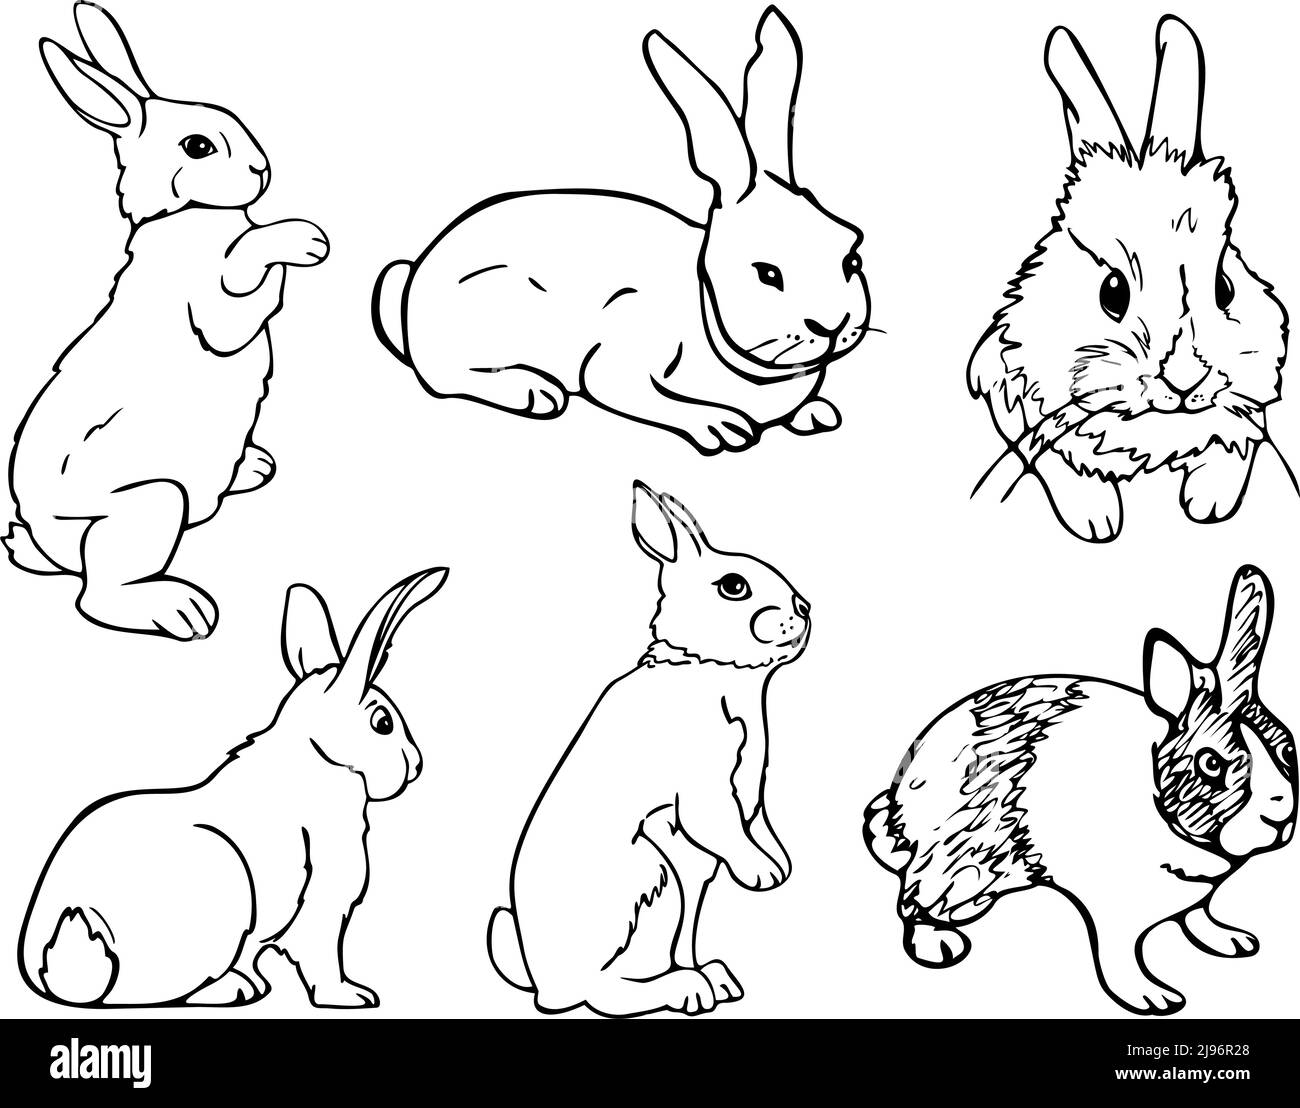 Schwarz weiß kaninchen Stock-Vektorgrafiken Alamy kaufen 